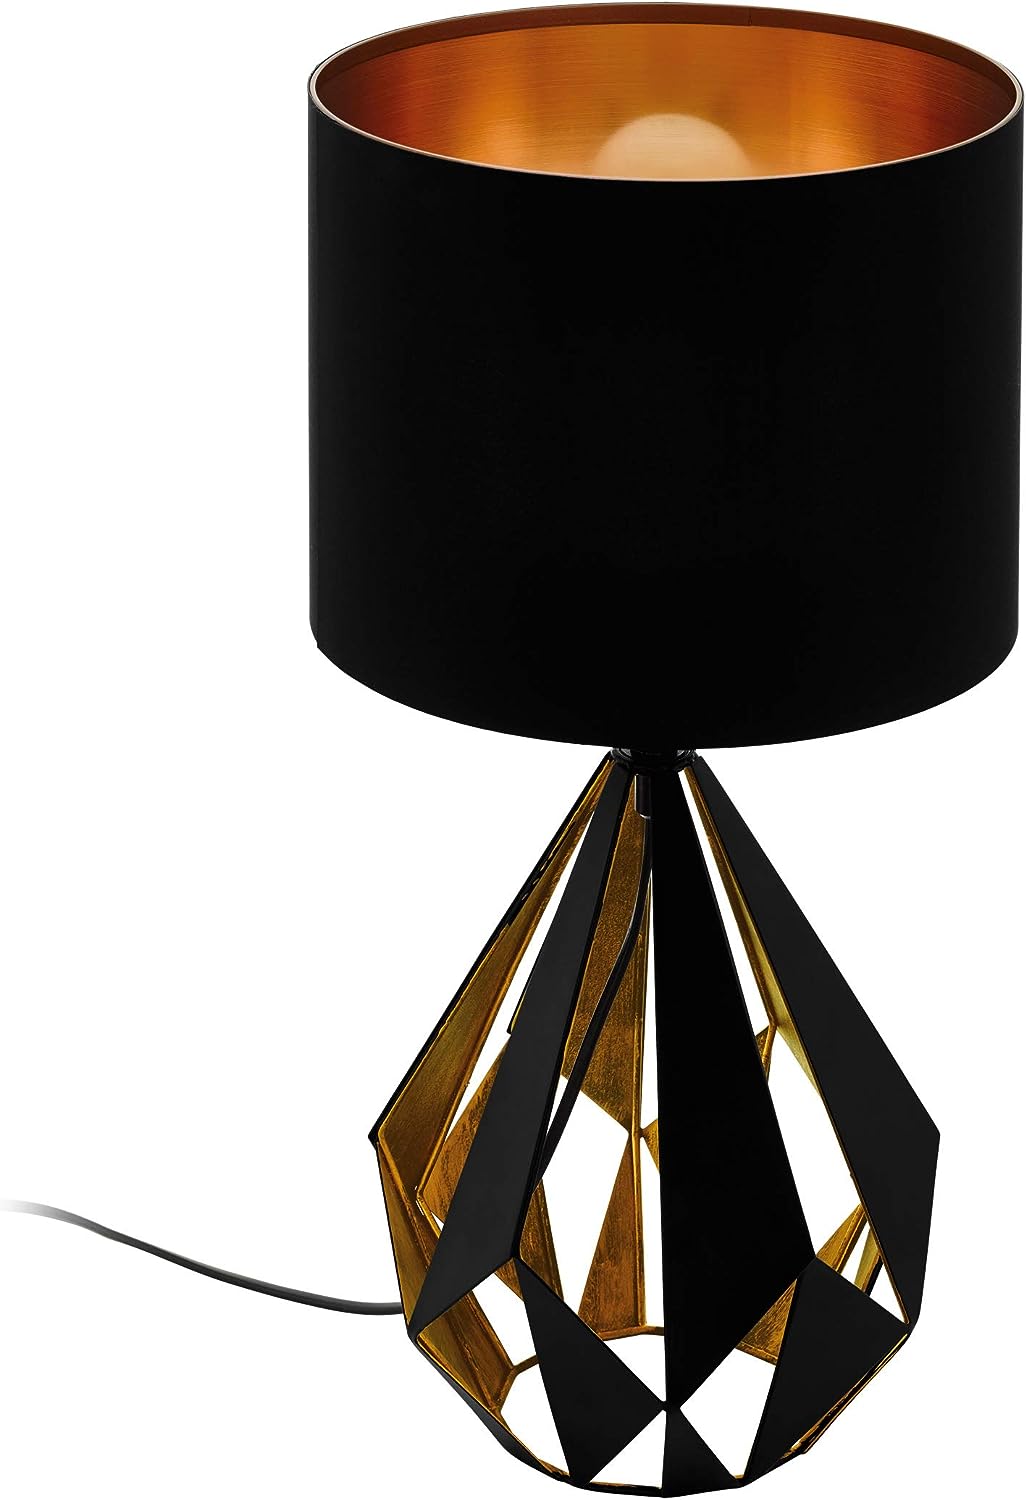 EGLO Tischlampe Carlton 5, 1 flammige Vintage Tischleuchte, Nachttischleuchte aus Stahl und Stoff, Farbe: Schwarz, kupfer, Fassung: E27, inkl. Schalter, 25x25x51 cm